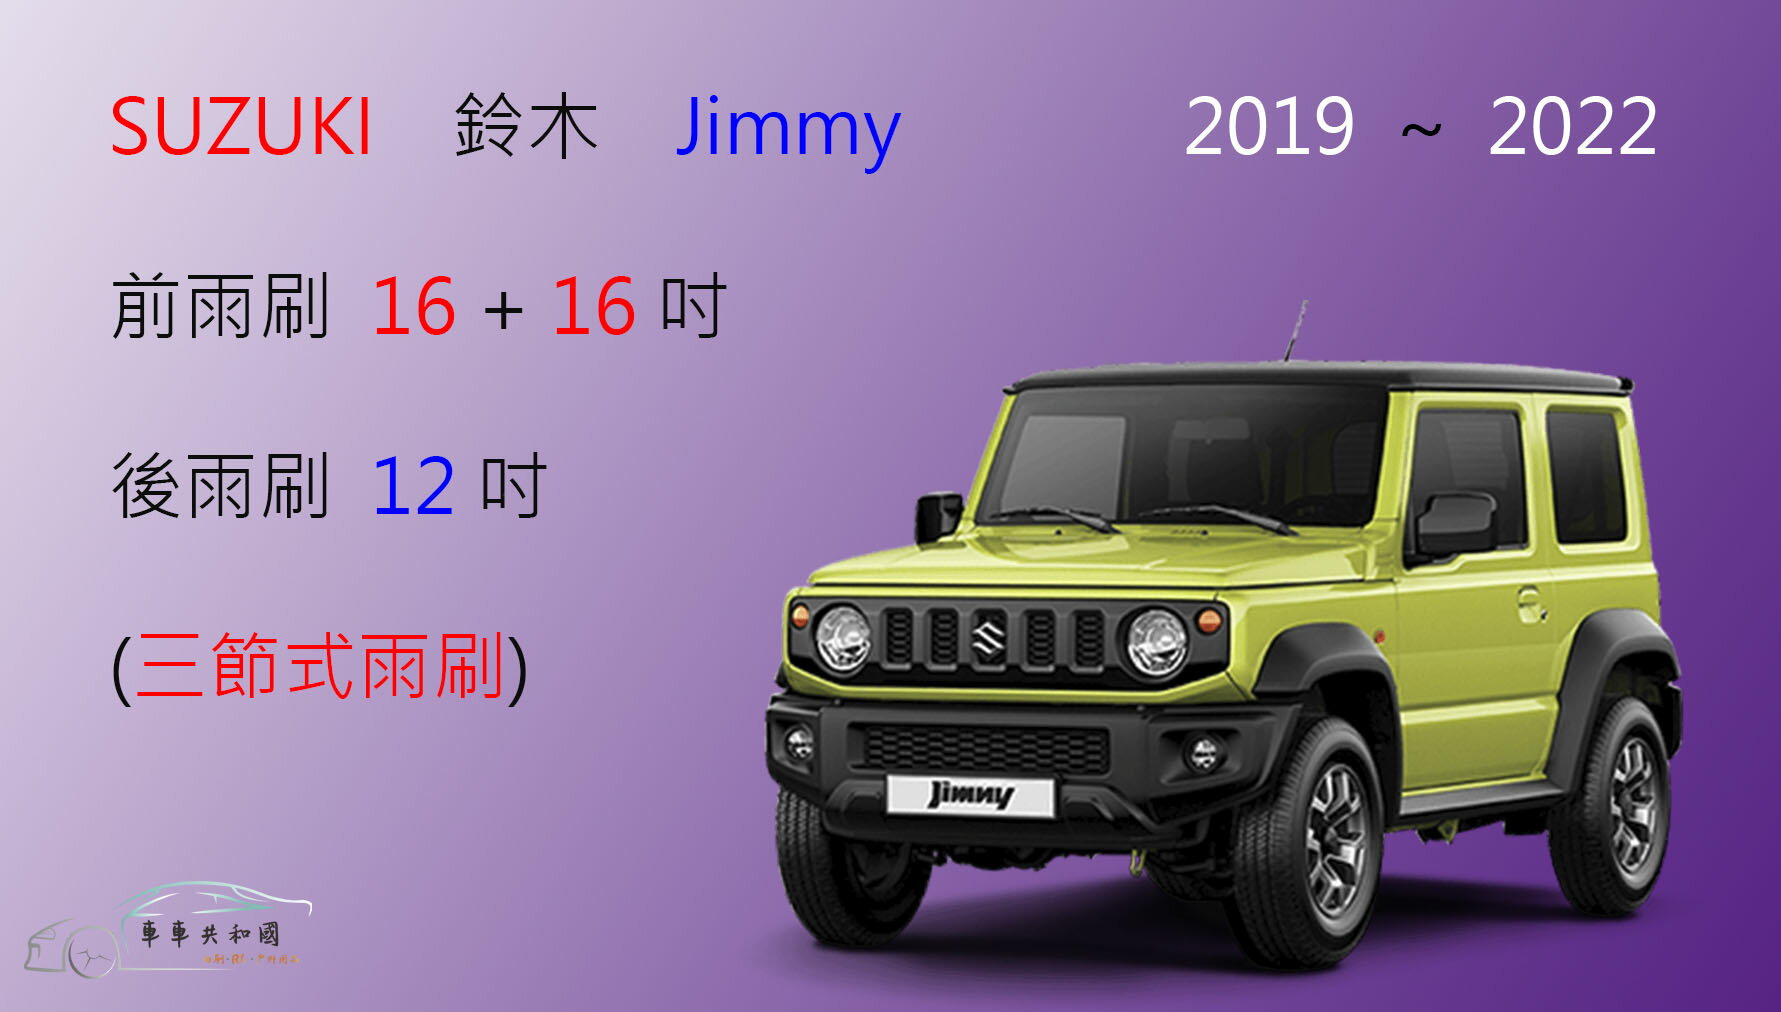 【車車共和國】Suzuki 鈴木 新Jimmy 三節式雨刷 2019年後 雨刷膠條 可換膠條式雨刷 雨刷錠